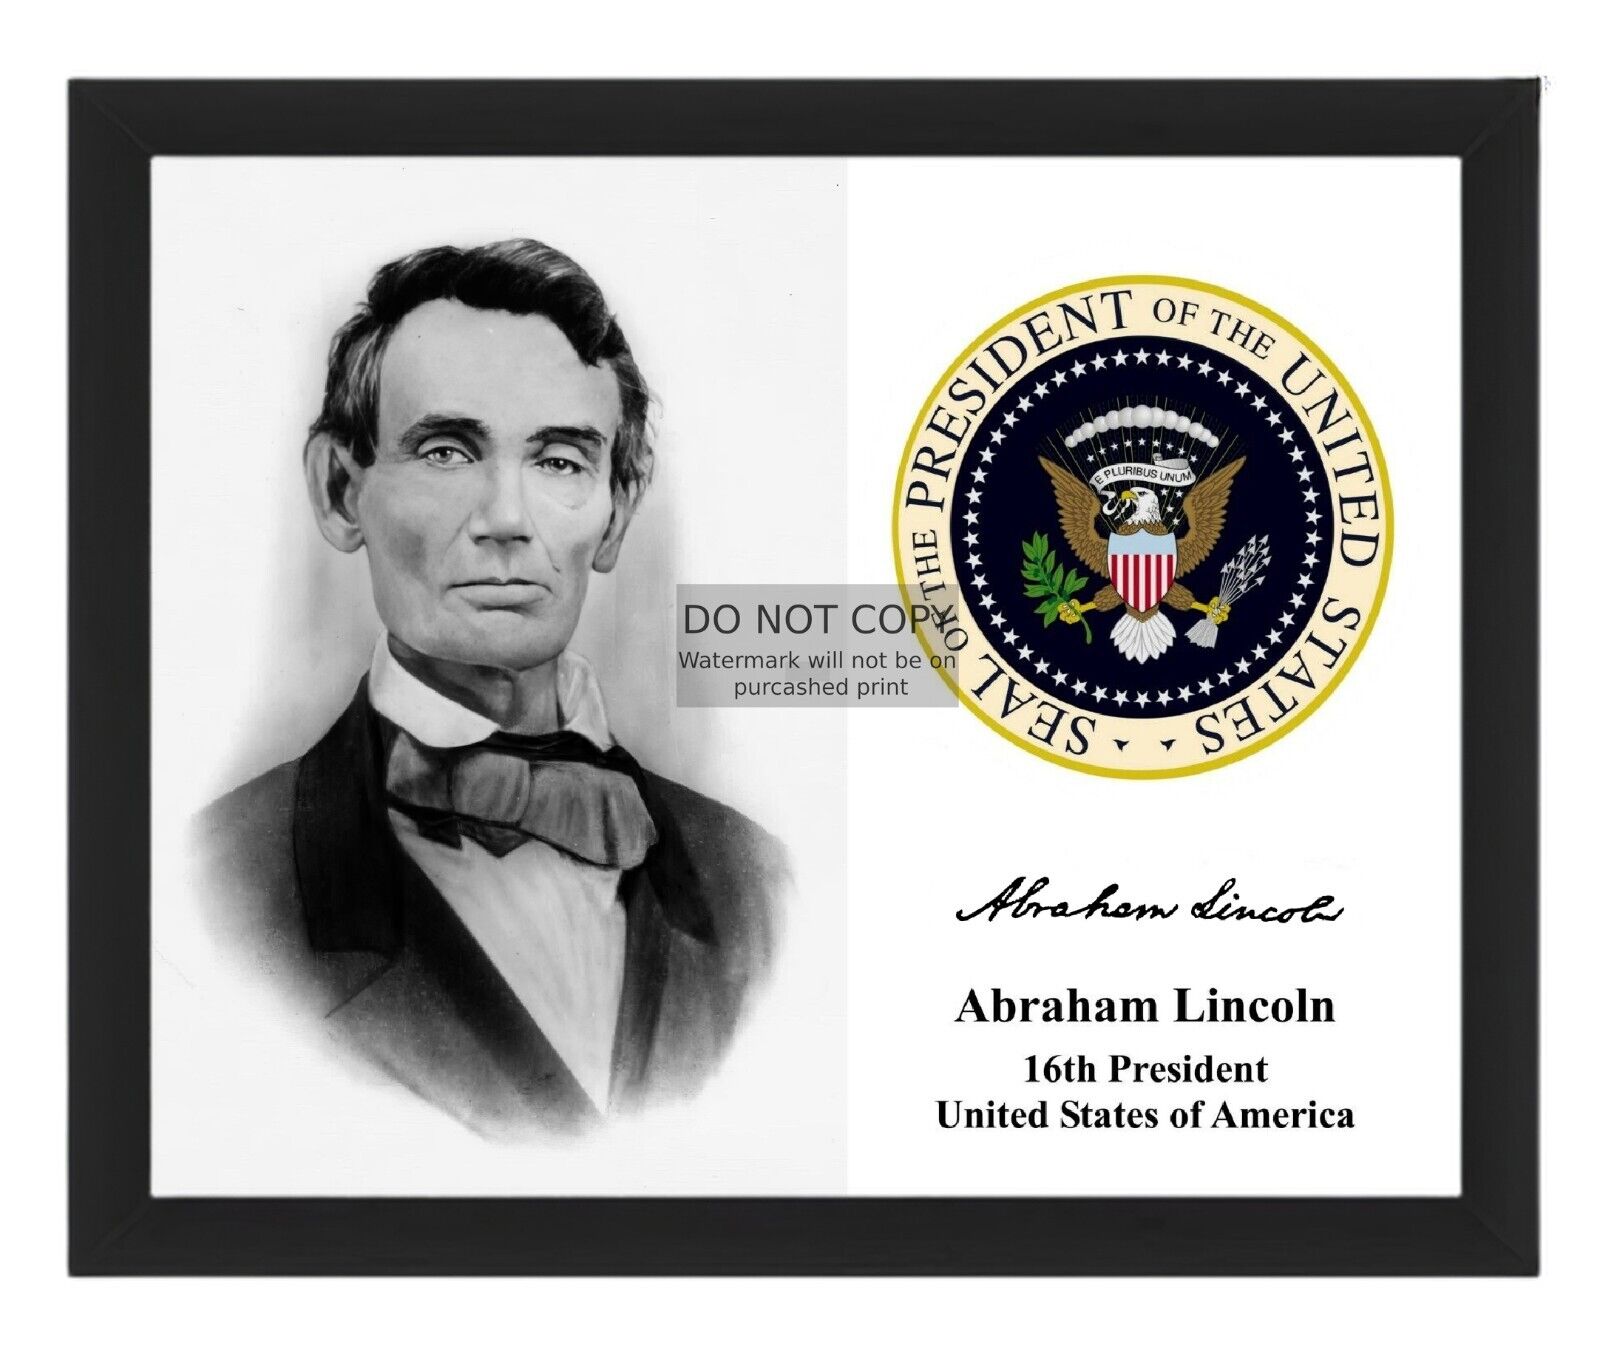 PRESIDENT ABRAHAM LINCOLN BEARDLESS PRESIDENTAIL SEAL 8X10 B&W FRAMED PHOTO